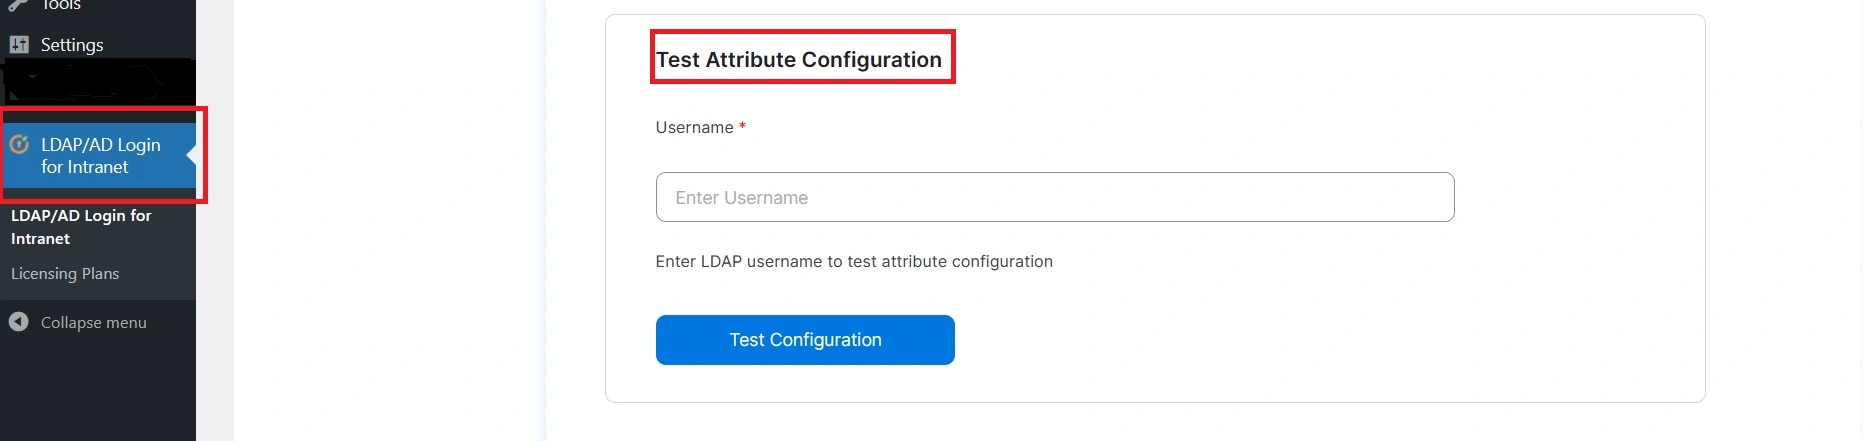 miniOrange Integración con Active Directory Integración LDAP Asignación de usuarios LDAP Configuración y atributo de prueba